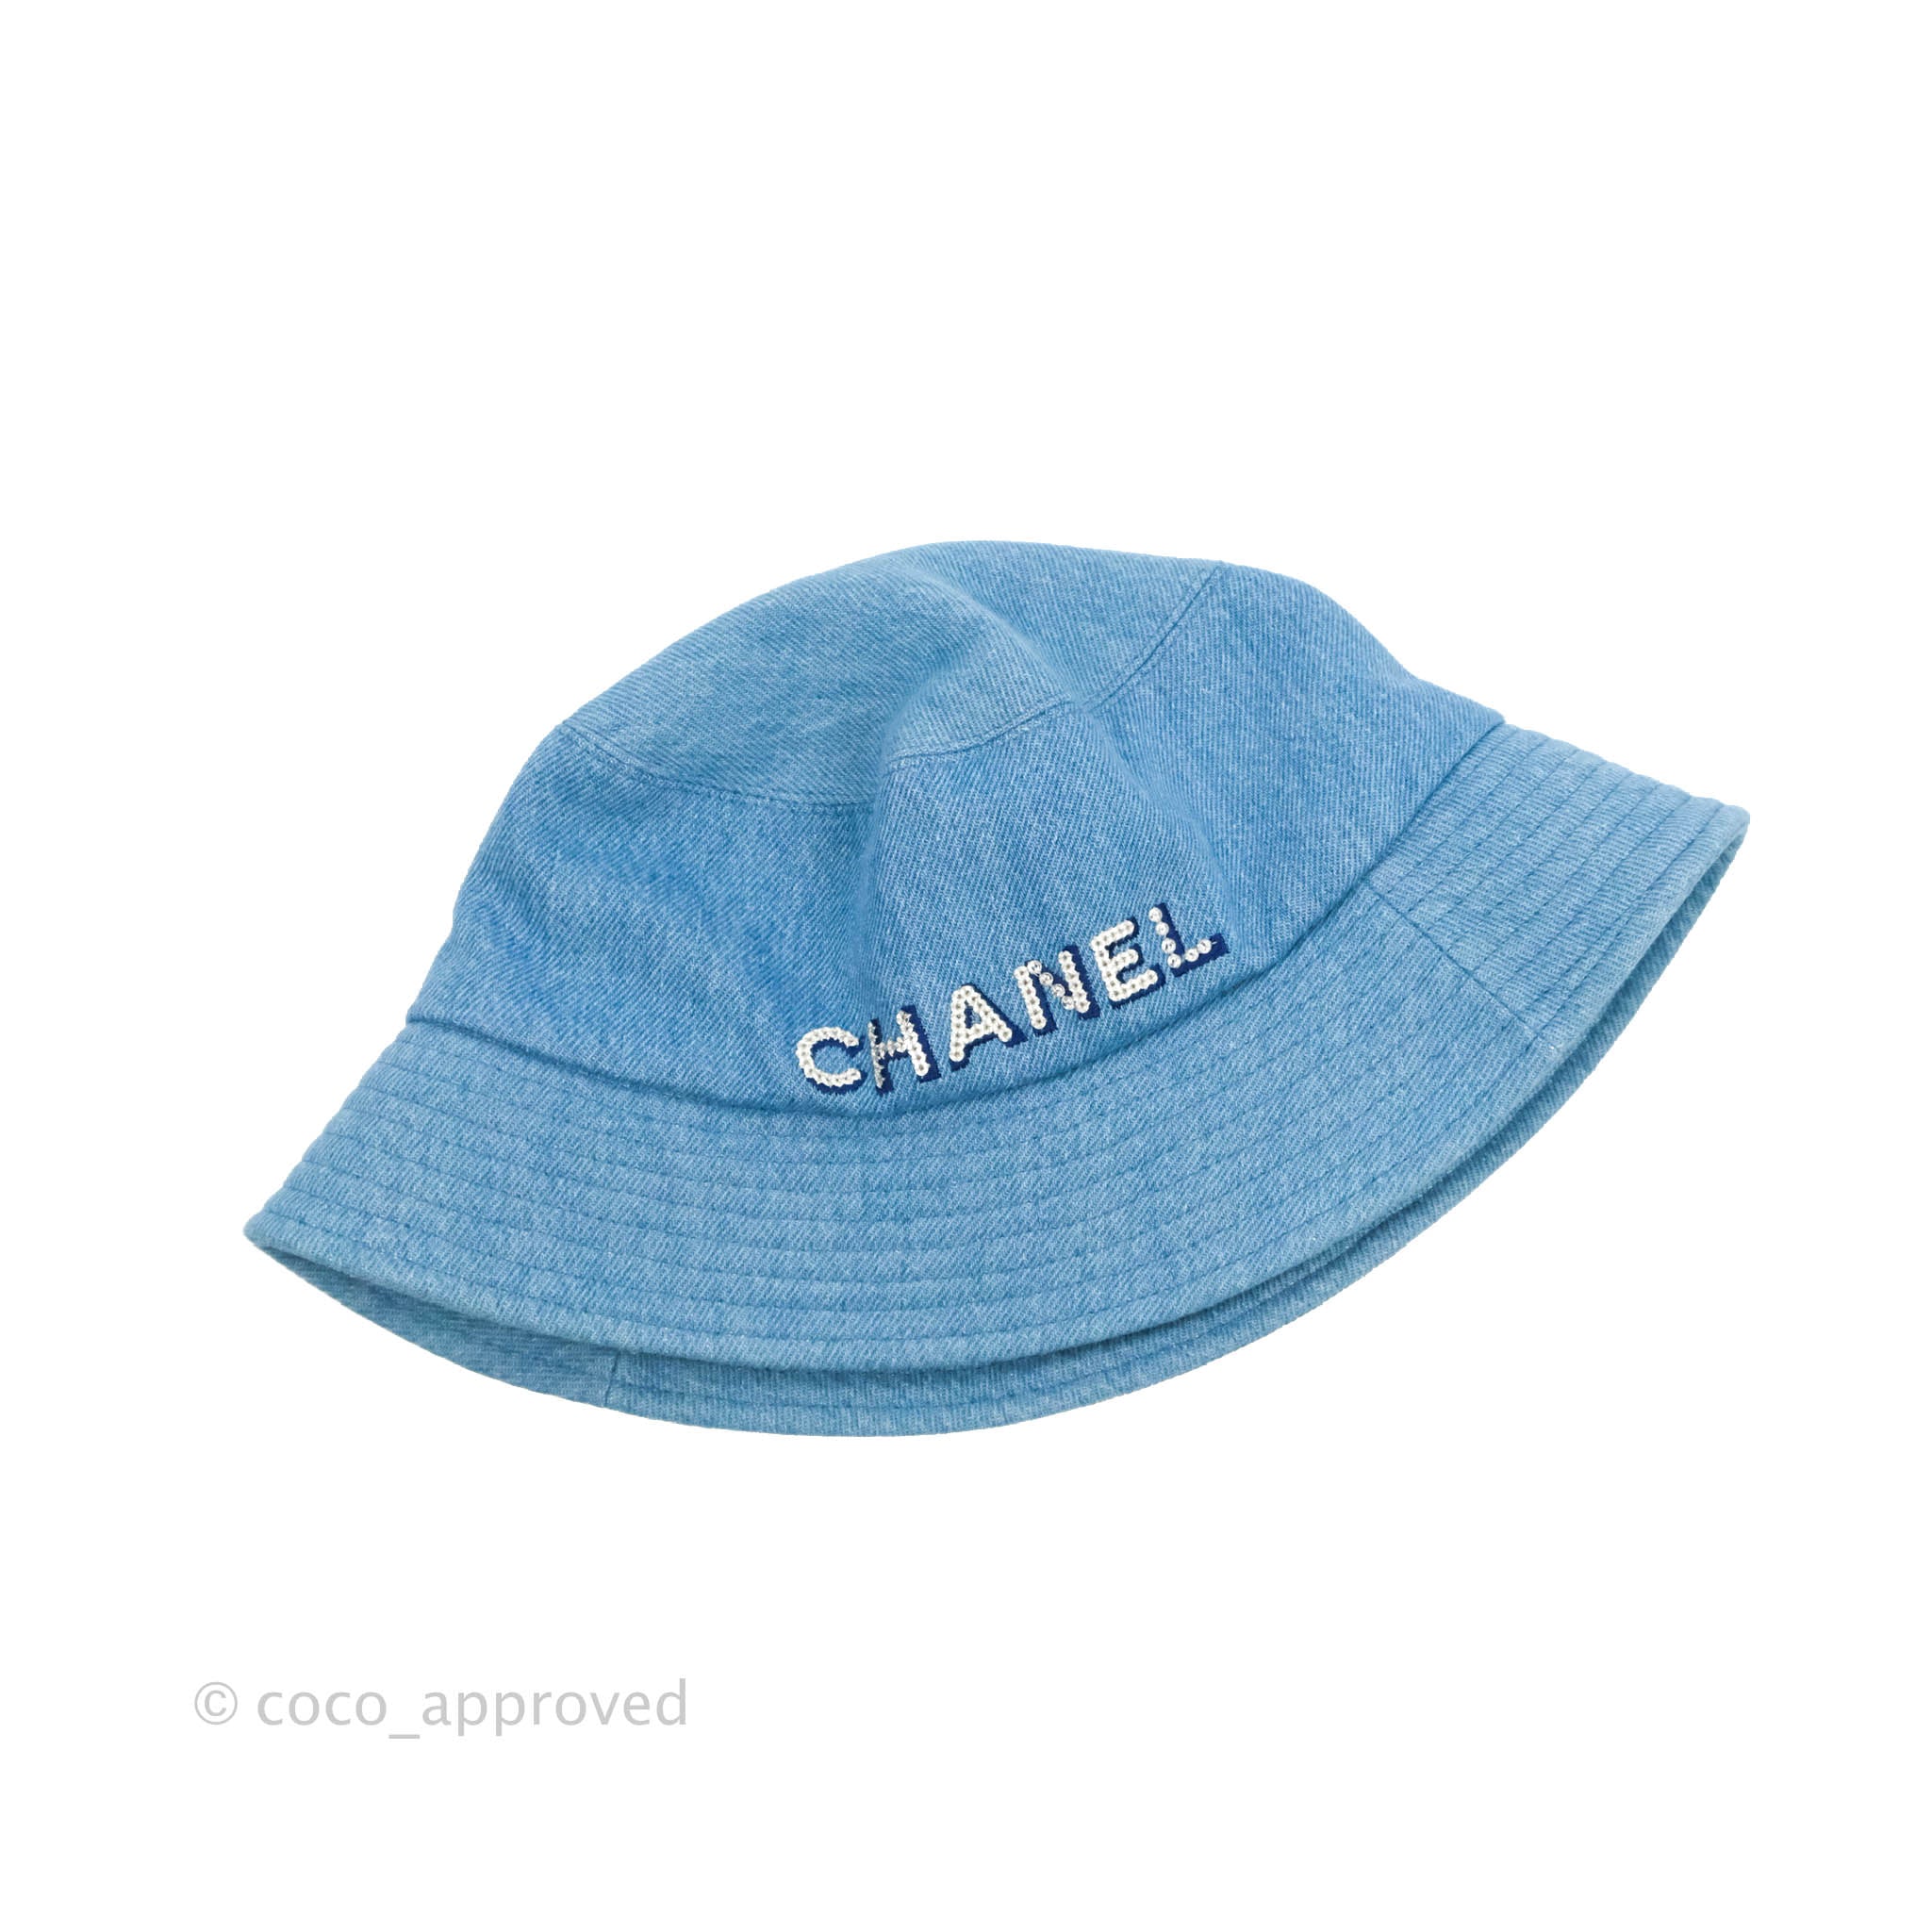 Chanel hat - Gem